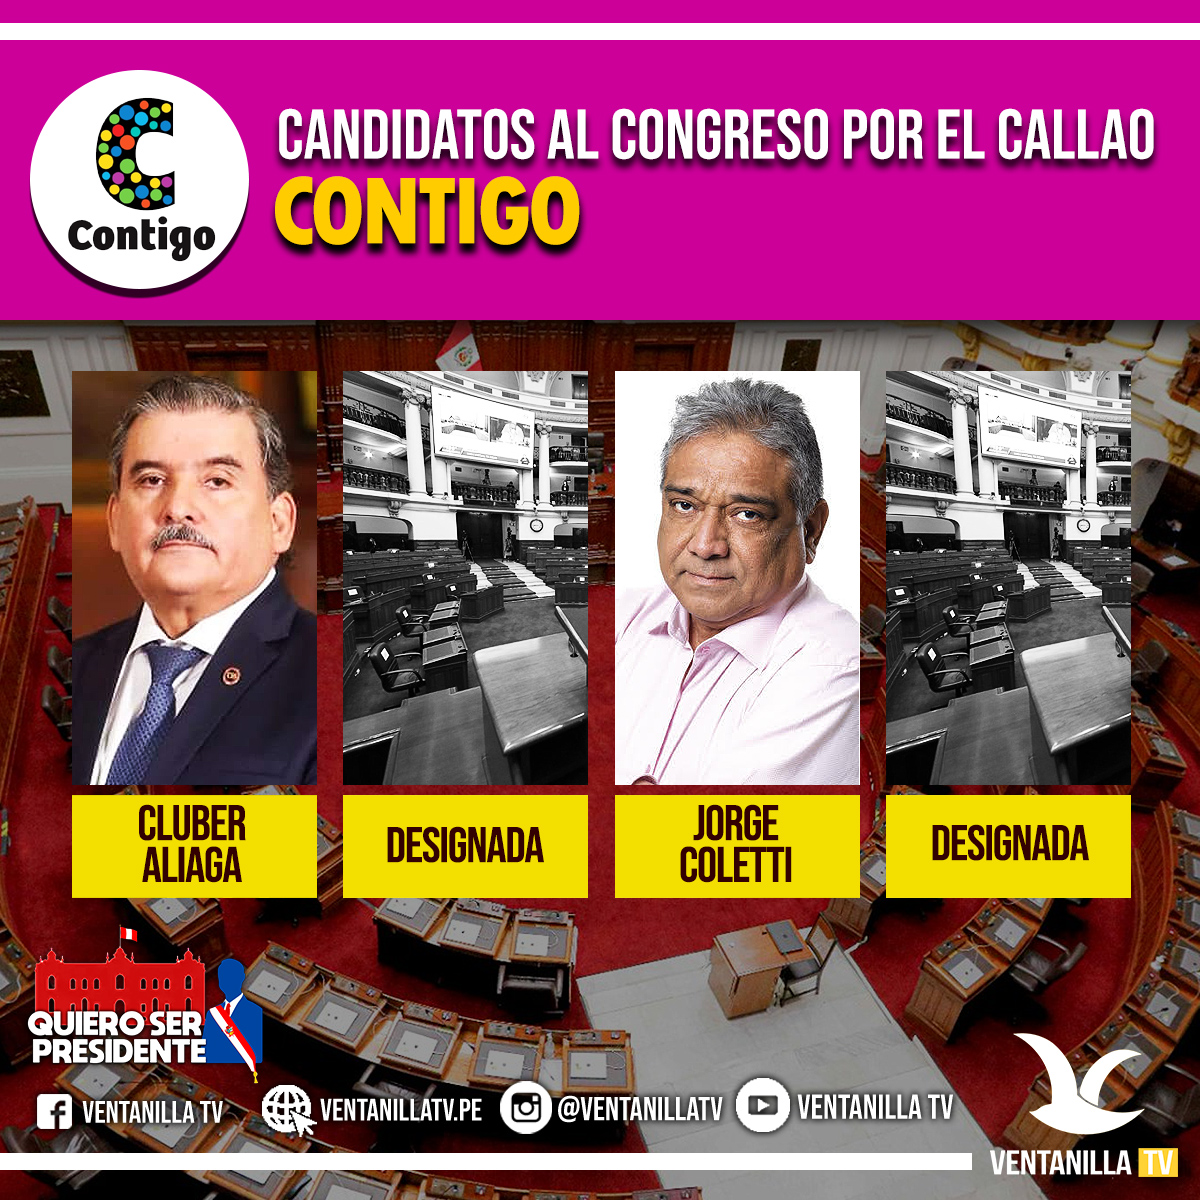 Conozca A Los Candidatos Al Congreso De La RepÚblica 2021 Ventanilla Tv 7254